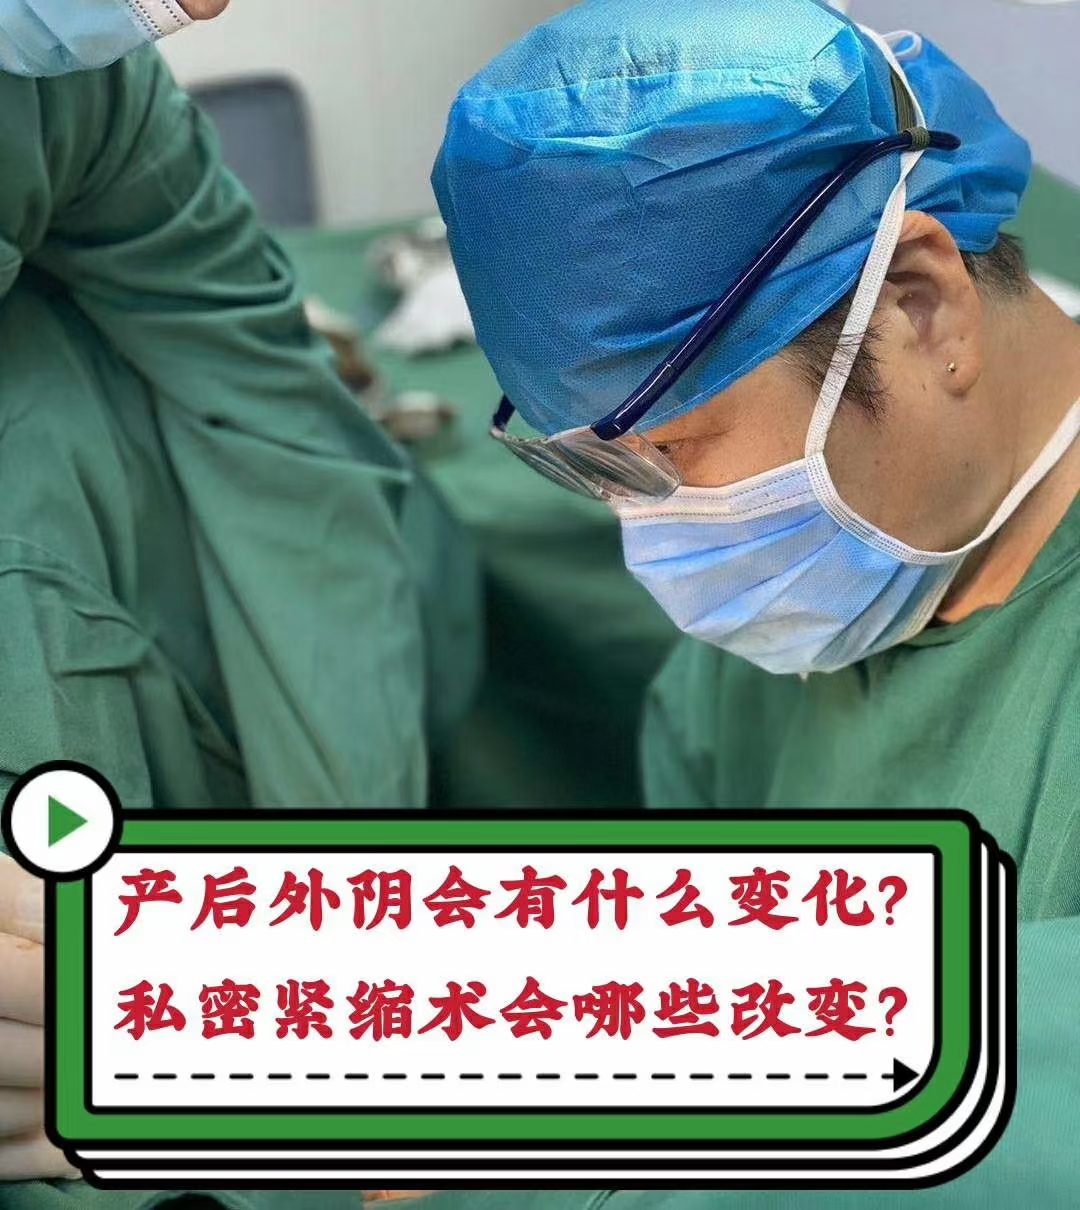 宁波援疆医生完成库车的第一例妇科腹腔镜手术-浙江新闻-浙江在线